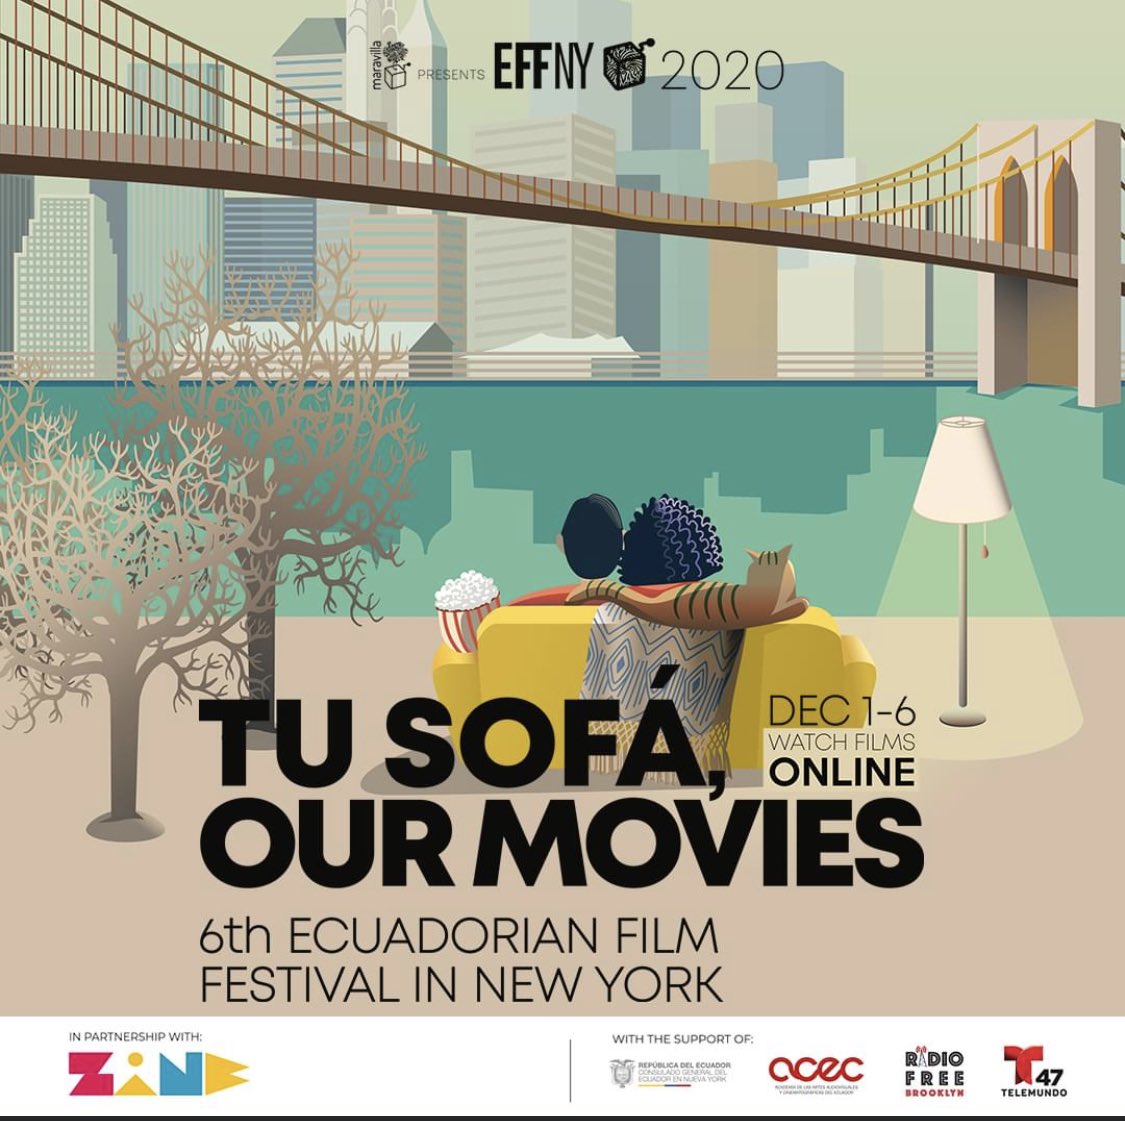 Se viene la sexta edición del Festival de Cine Ecuatoriano en Nueva York, #effny202. Por primera vez de forma virtual del 1 al 6 de diciembre, disponible en EEUU y Ecuador en zine.ec ¡Atentos a la programación en estos días!